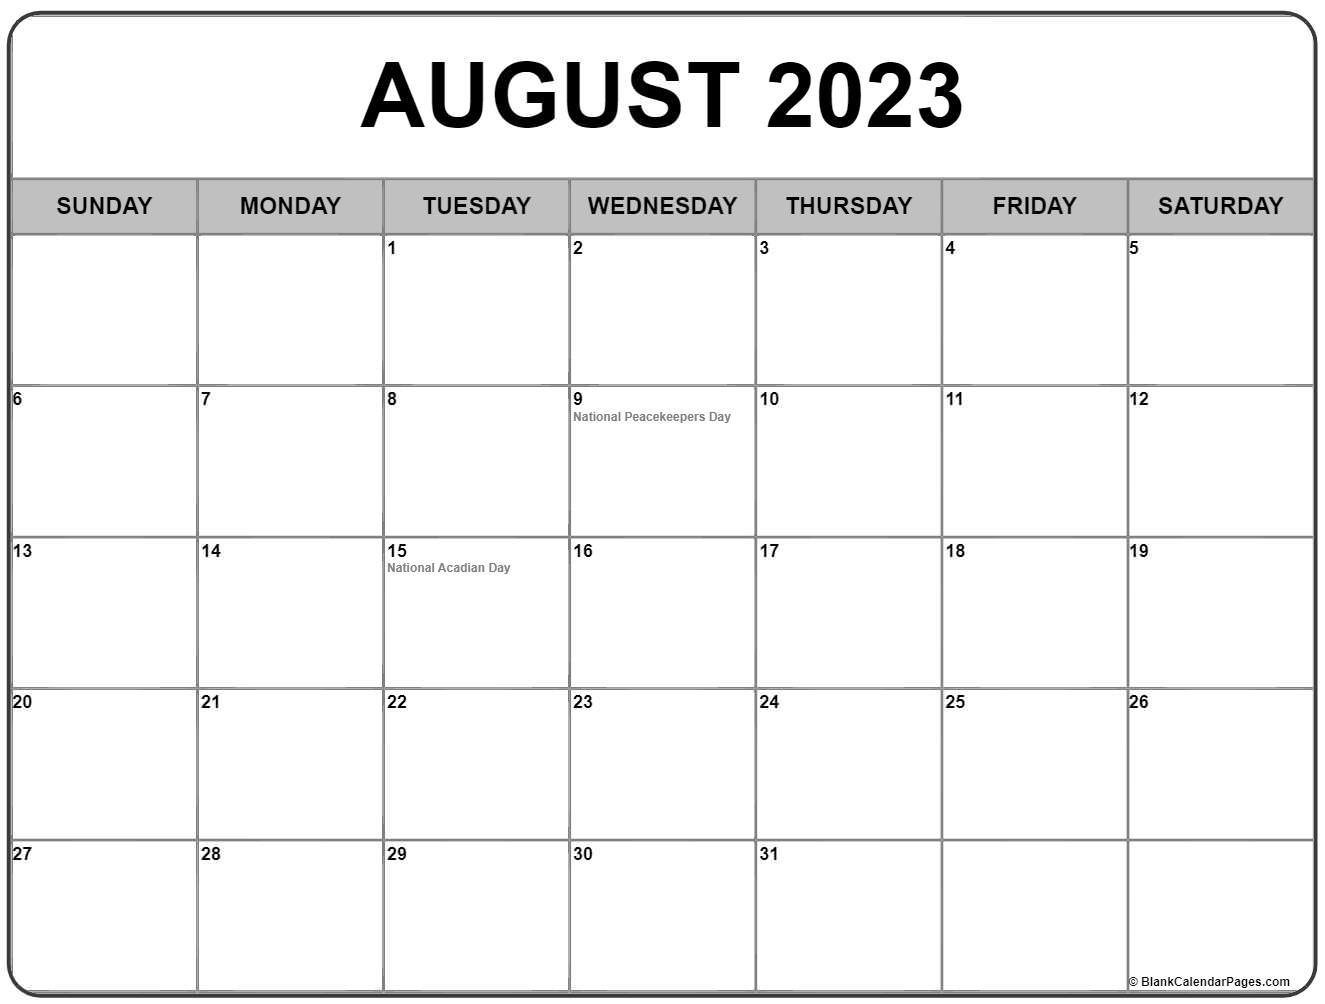 august-2023-calendar-national-days-get-calendar-2023-update